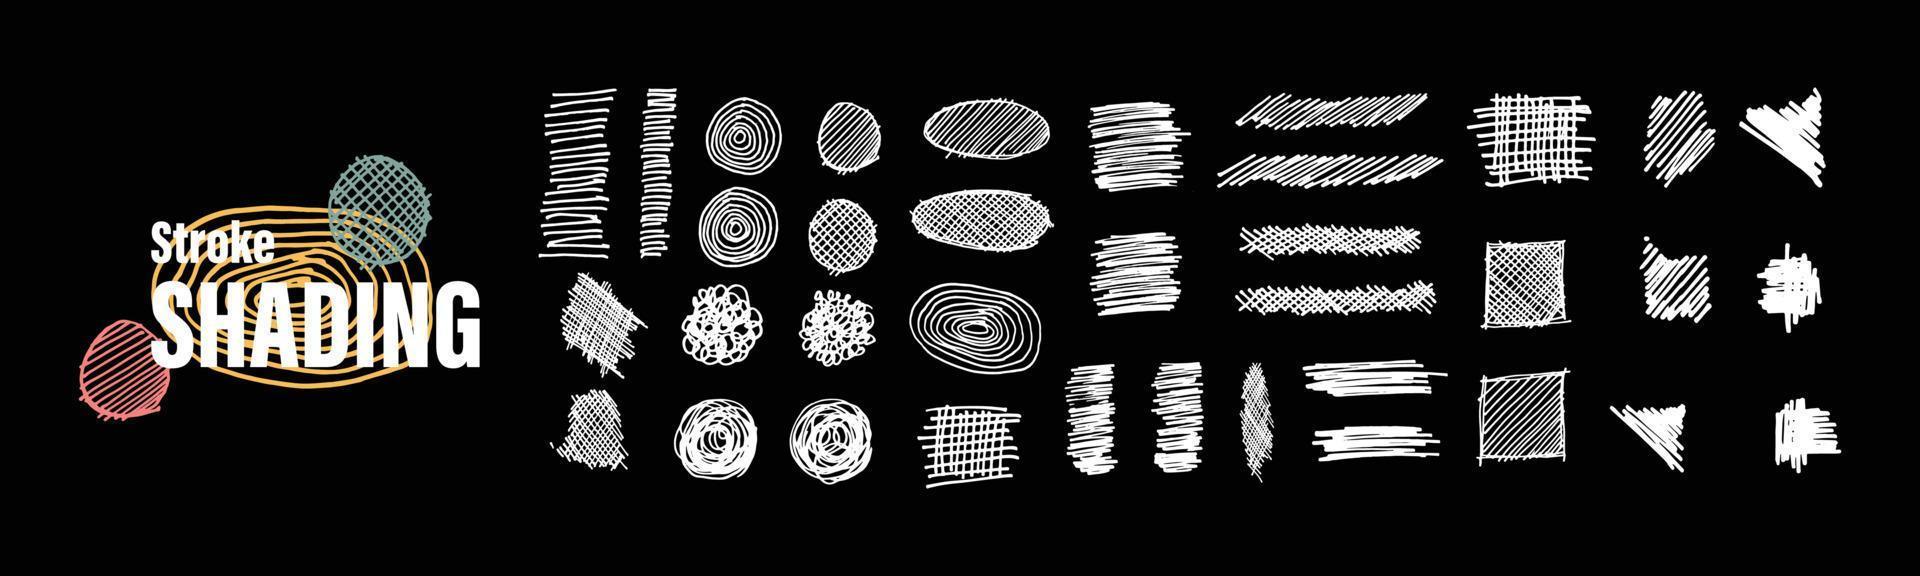 eine Sammlung von Scribble-Illustrationen im Vektordesign. satz abstrakter gekritzellinie für gestaltungselement, verzierung, kopierraum und clipart. vektor